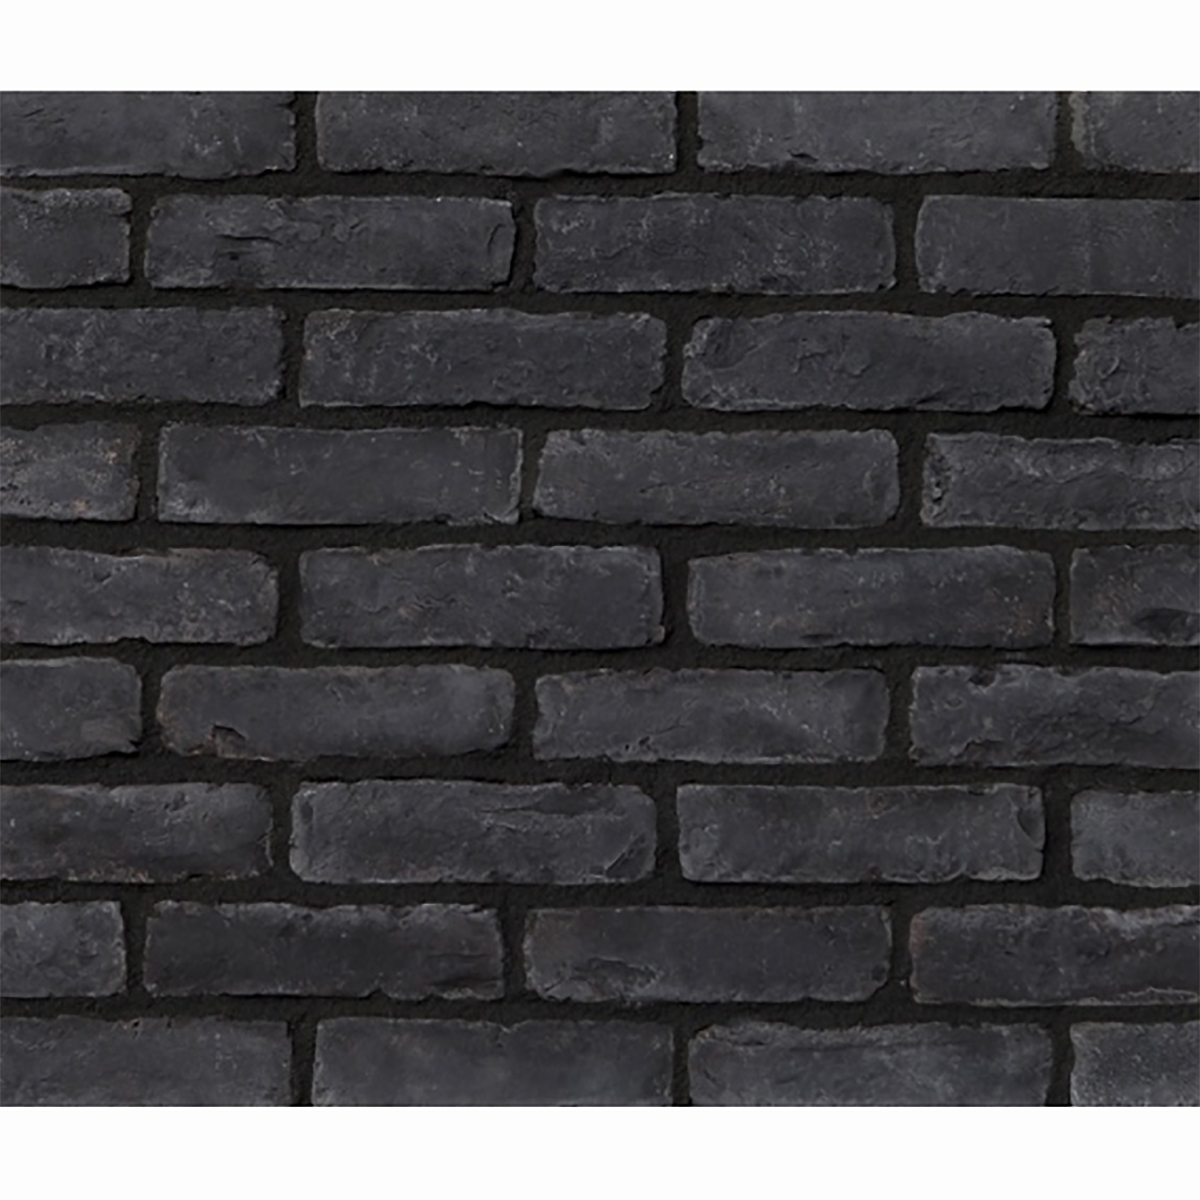 Attica brick black